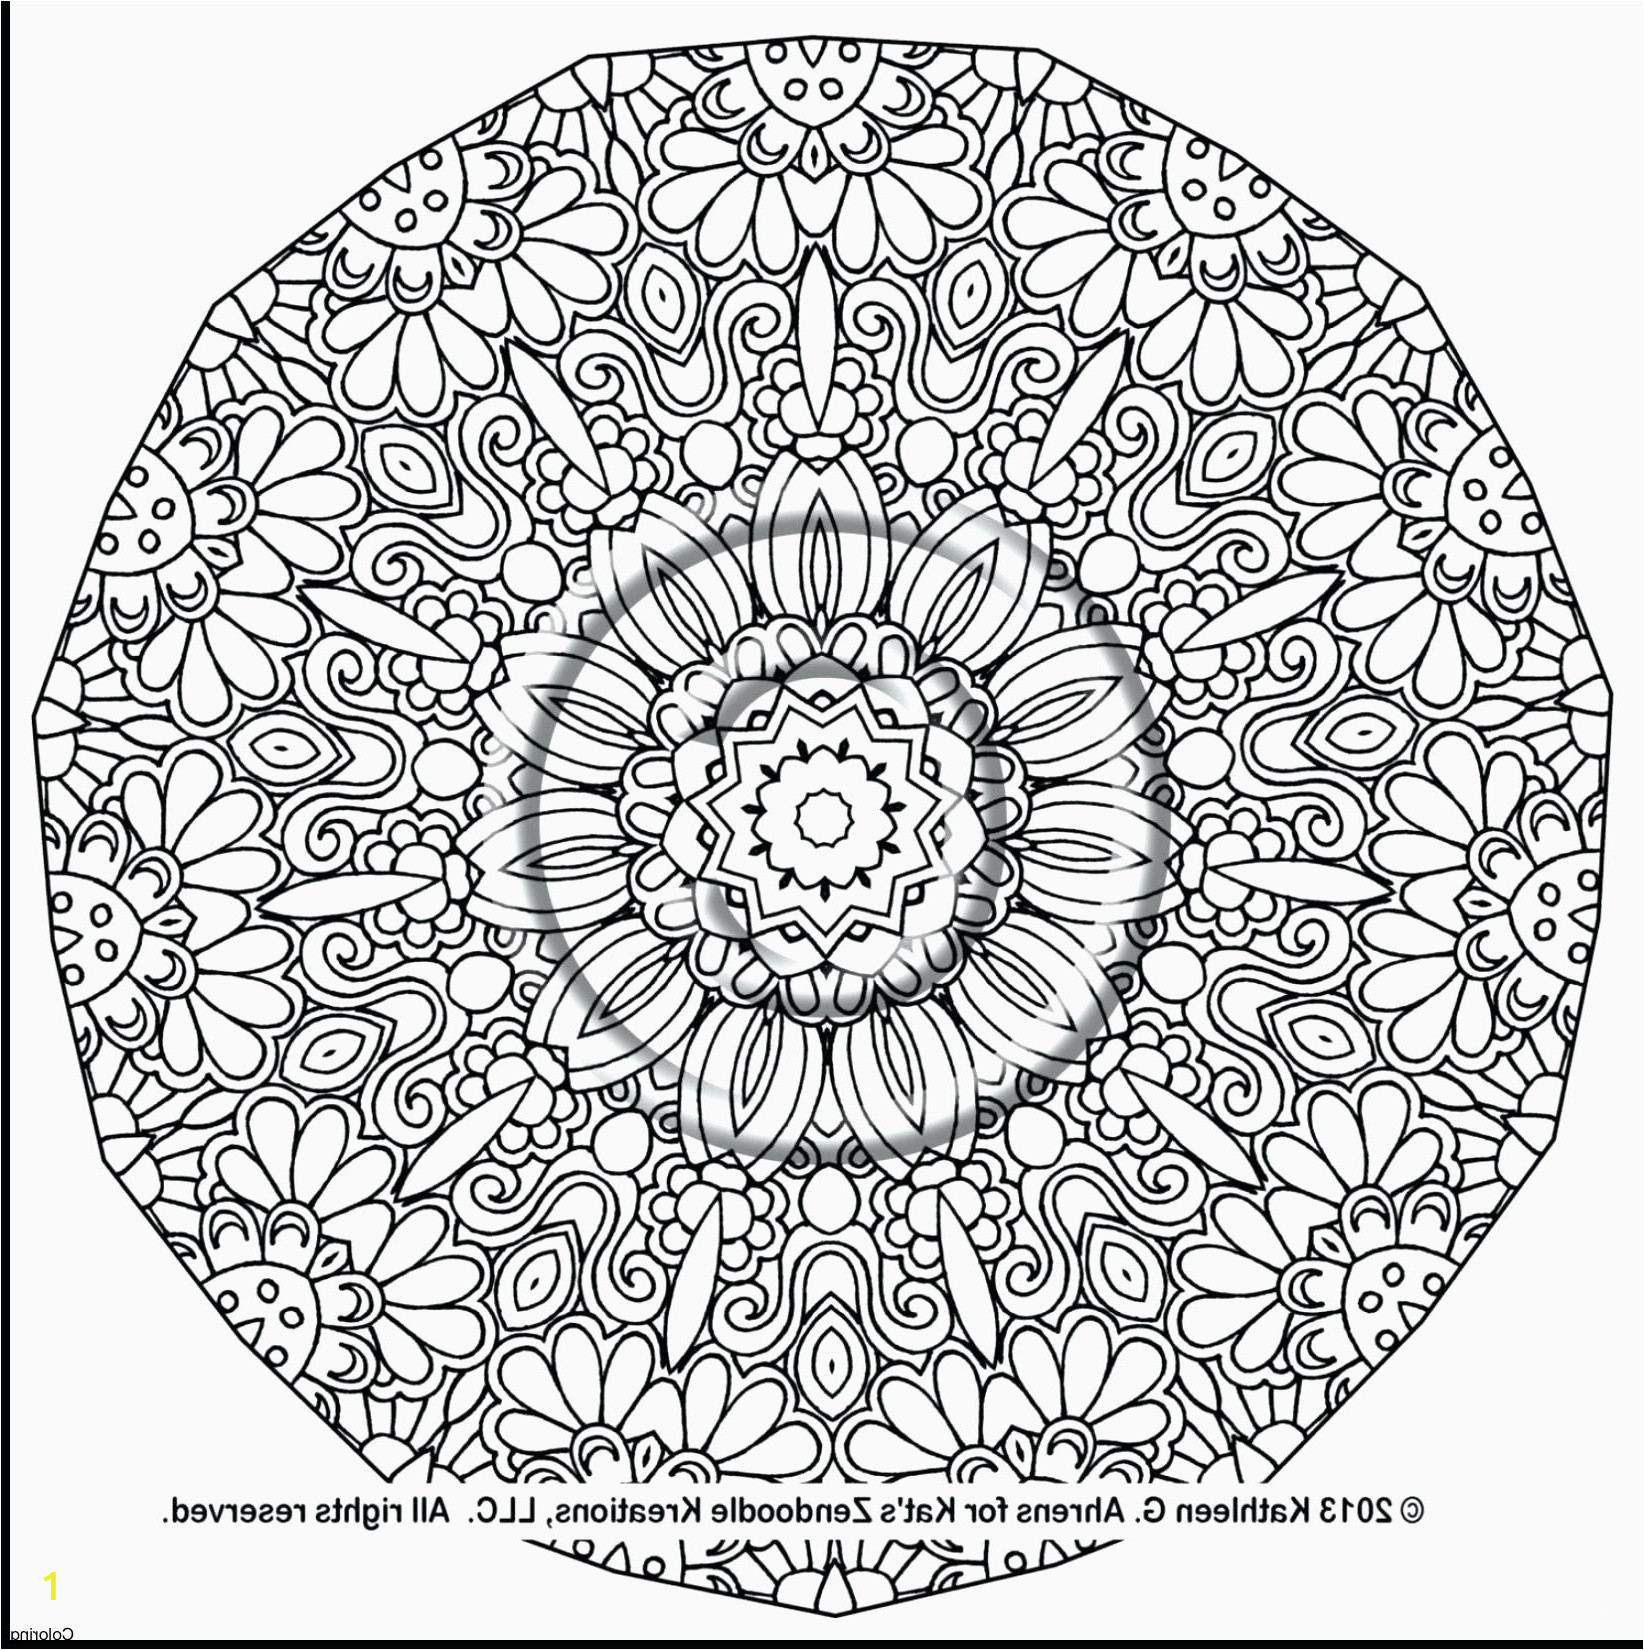 Full Page Mandala Coloring Pages 22 Inspirational S Printable Mandala Coloring Sheet